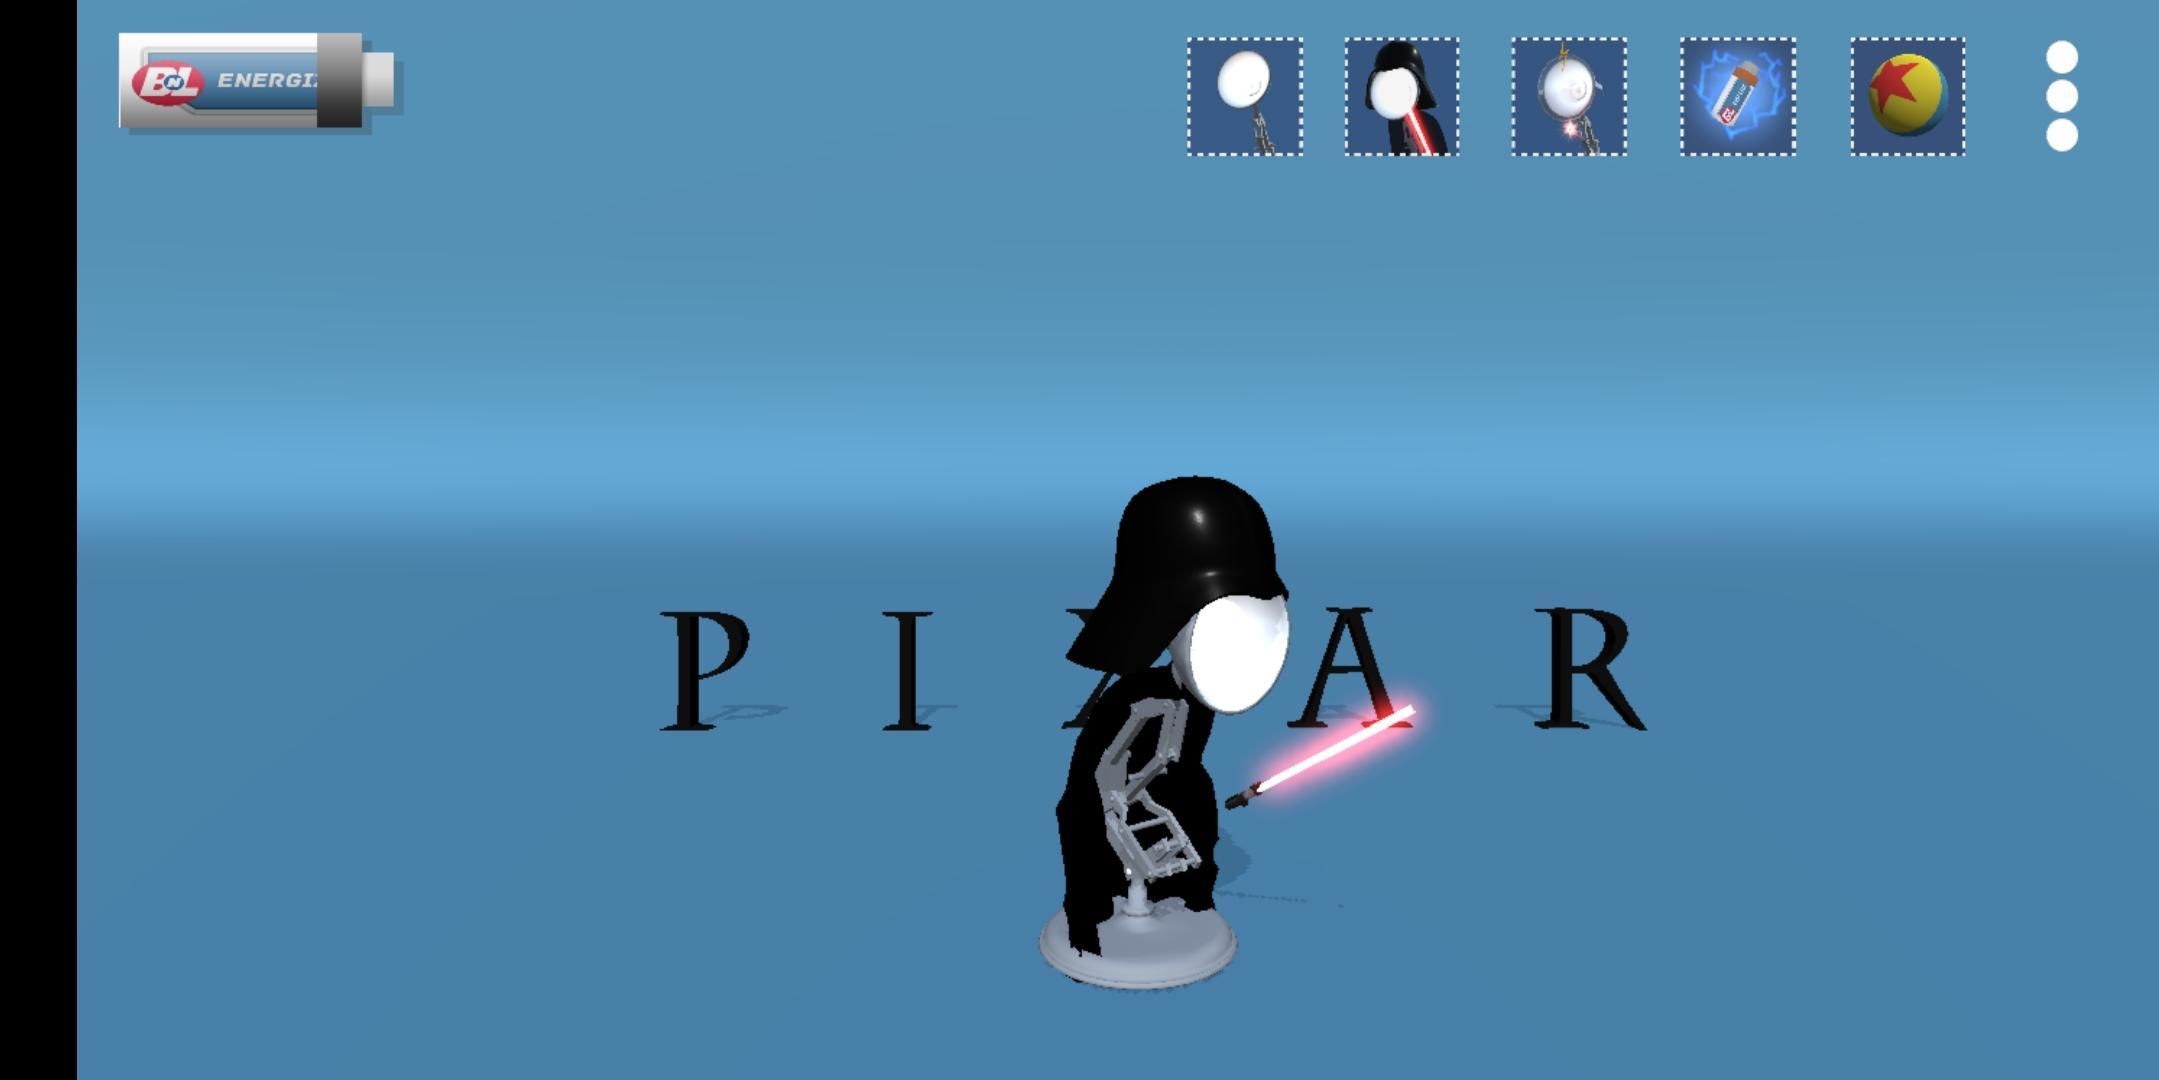 Pixar Game For Android Apk Download - roblox pixar logo